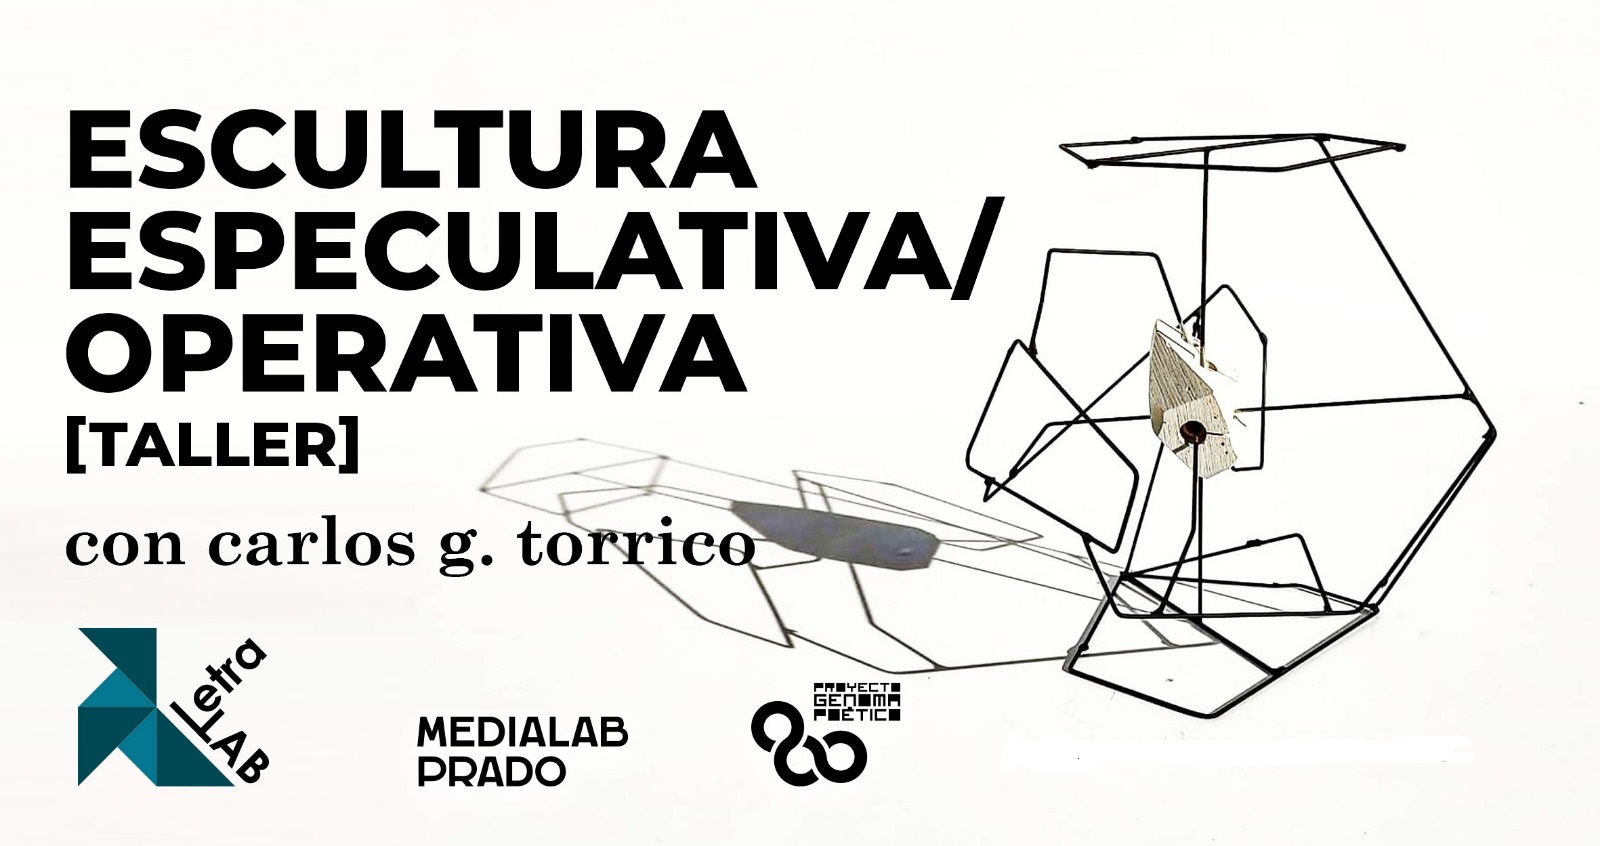 escultura especulativa carlos g. torrico